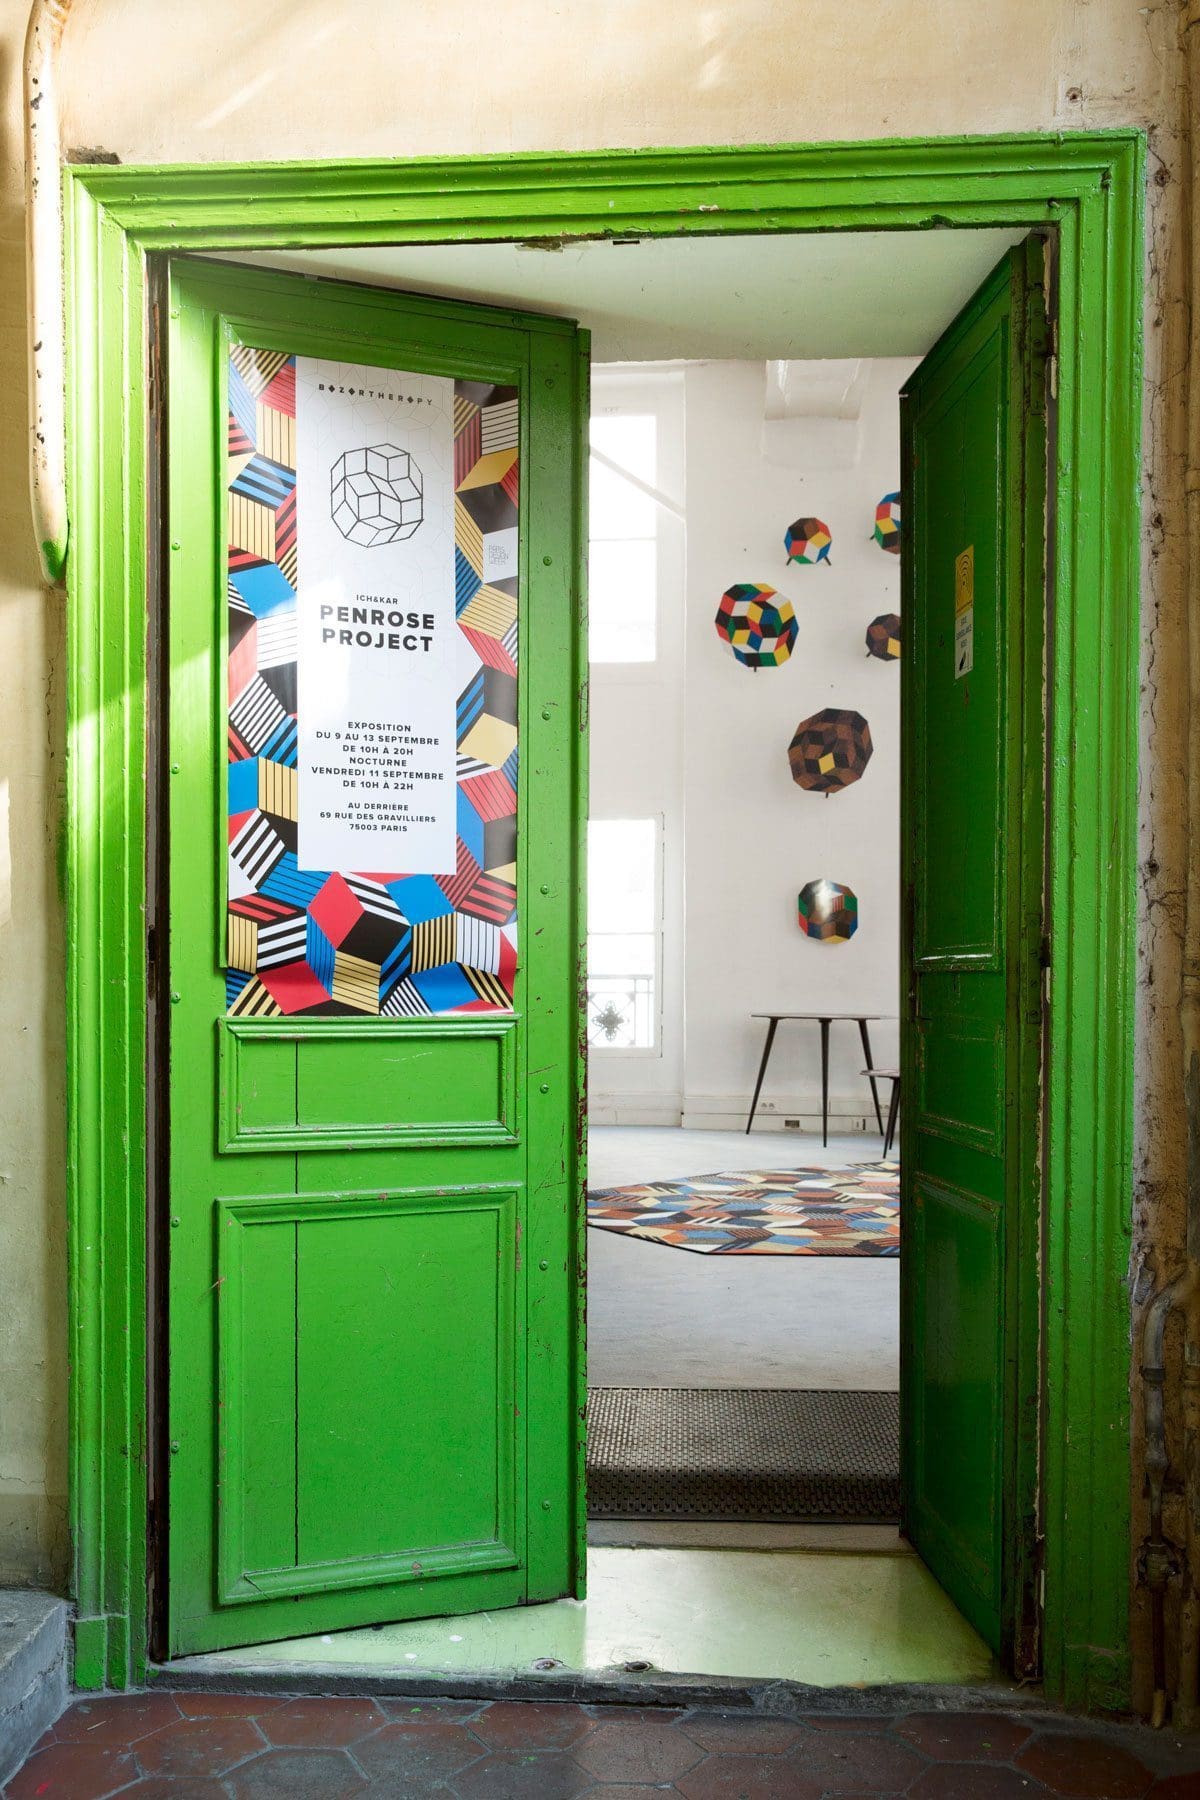 Exposition Penrose Project ouverture, Ich&Kar - Bazartherapy, Paris Design Week 2015, restaurant Le Derrière